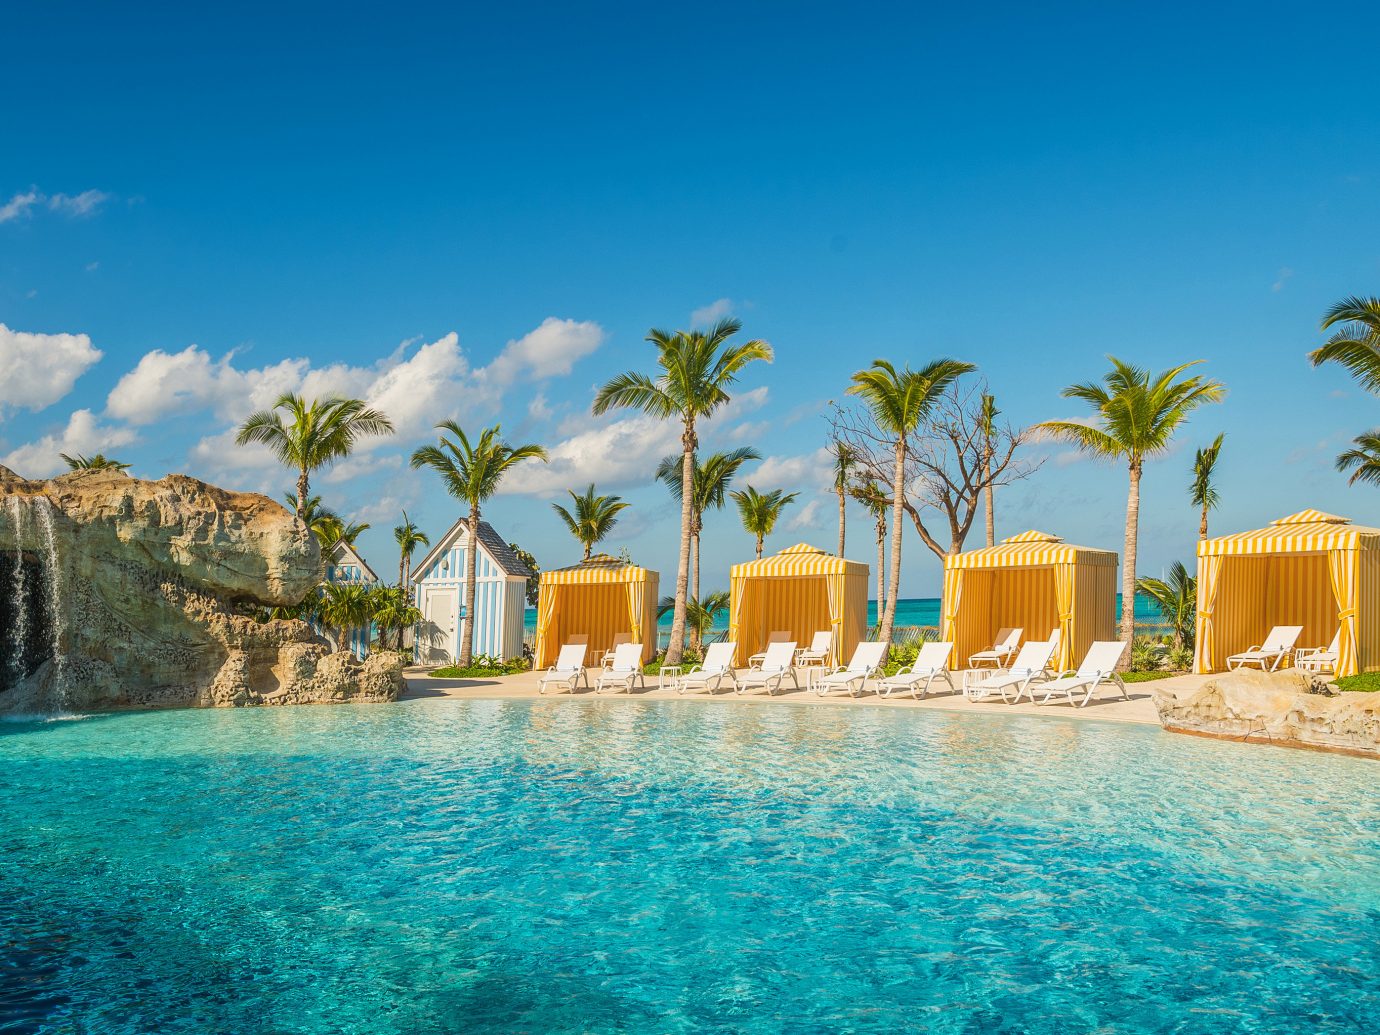 spiaggia live wallpaper reale,ricorrere,piscina,vacanza,caraibico,località turistica